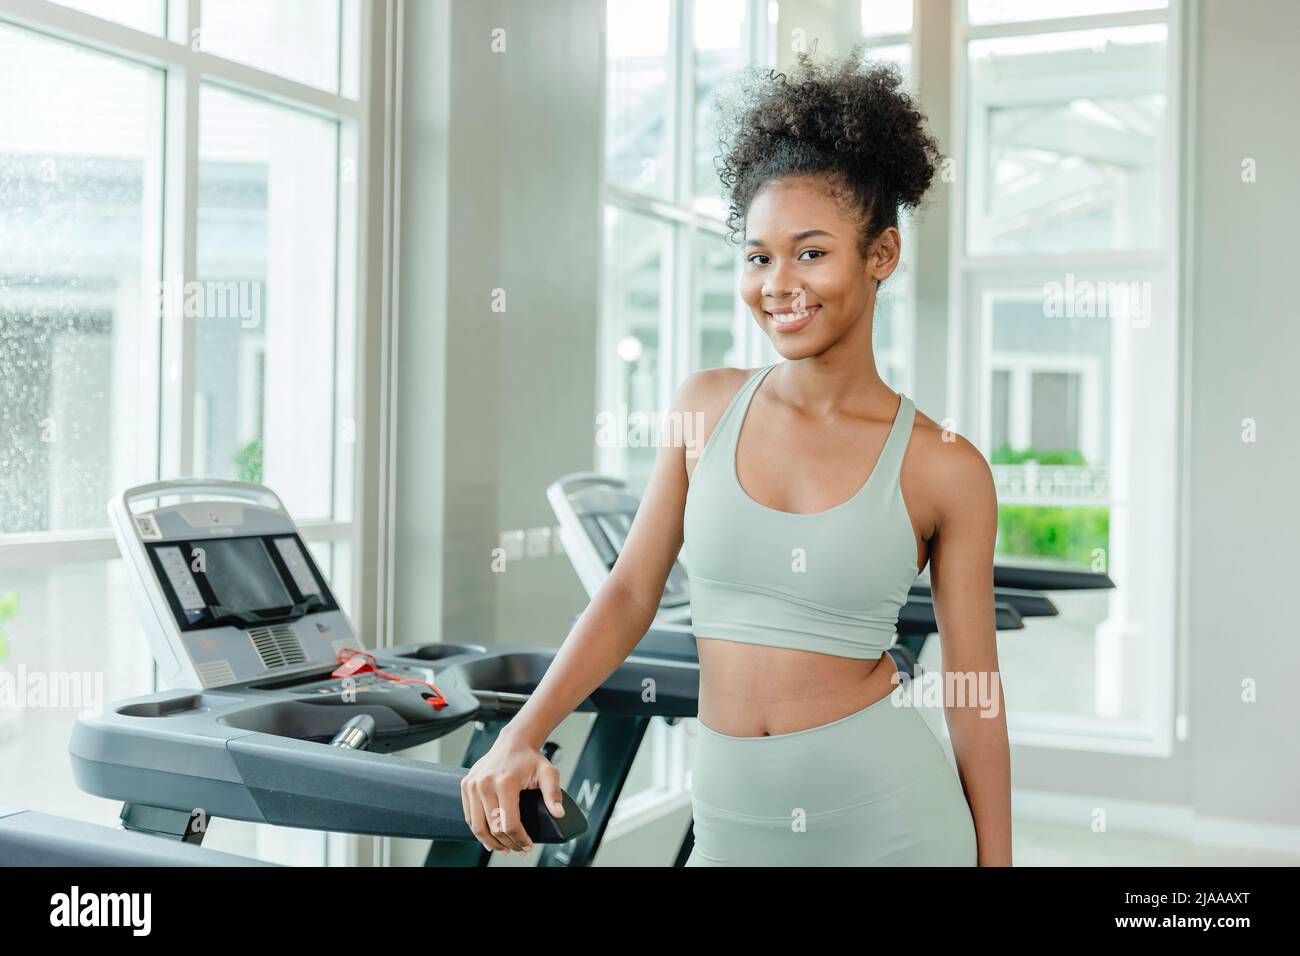 Portrait gesunde junge Teenager schwarze Frau in Sportclub Fitness glücklich smile.Healthcare Mädchen Workout-Übung. Stockfoto